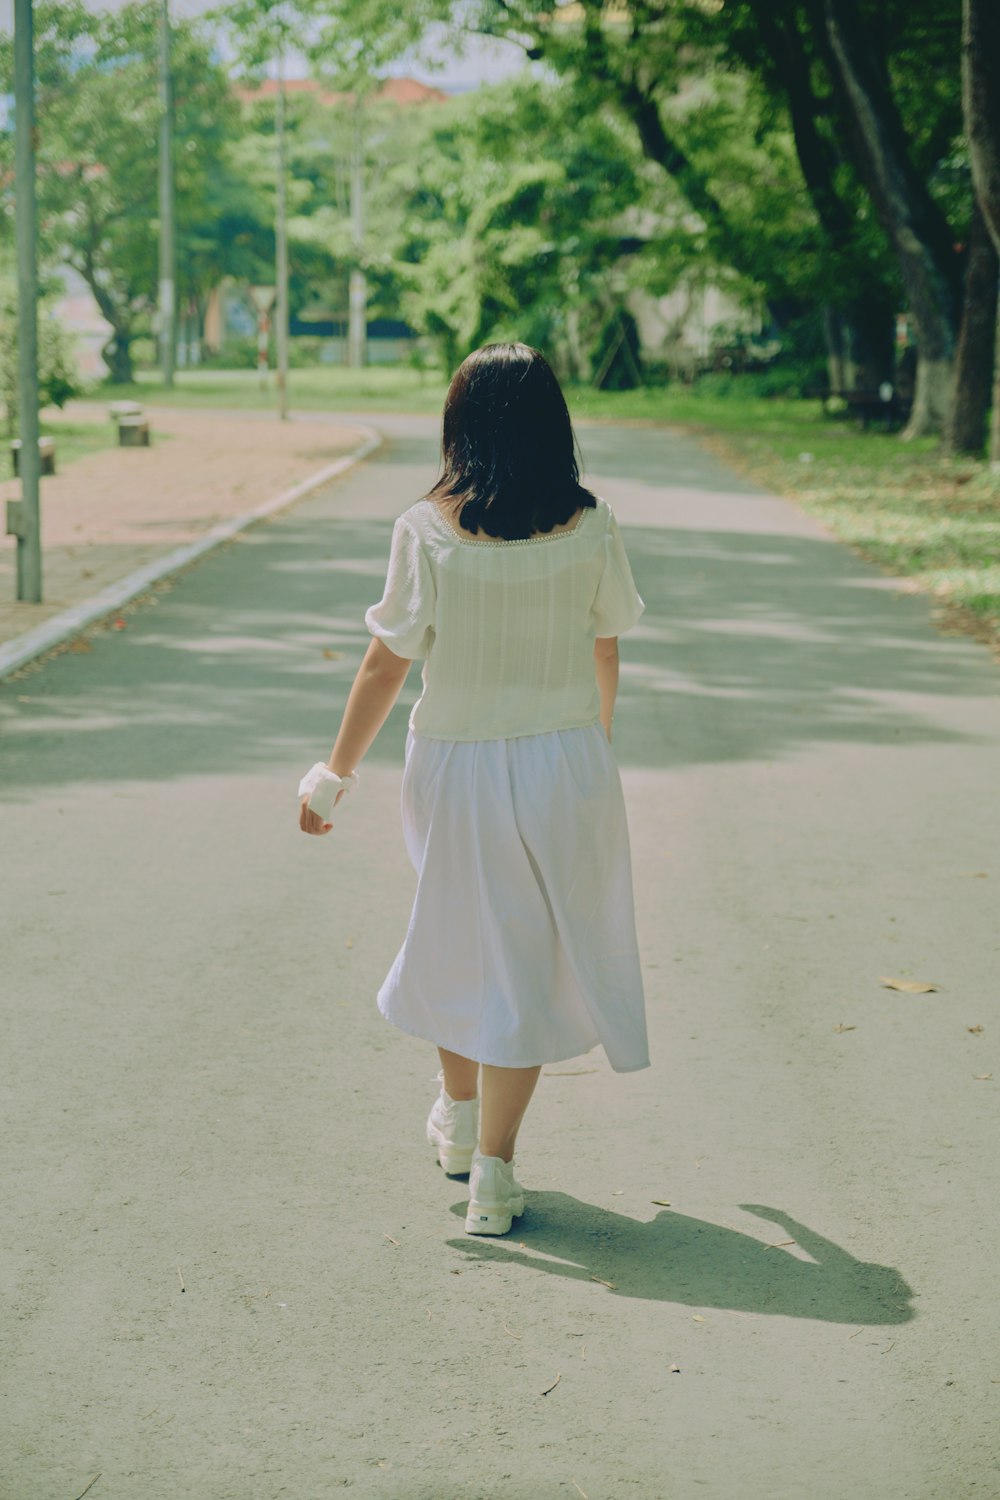 girl in white dress walking on gray asphalt road during daytime